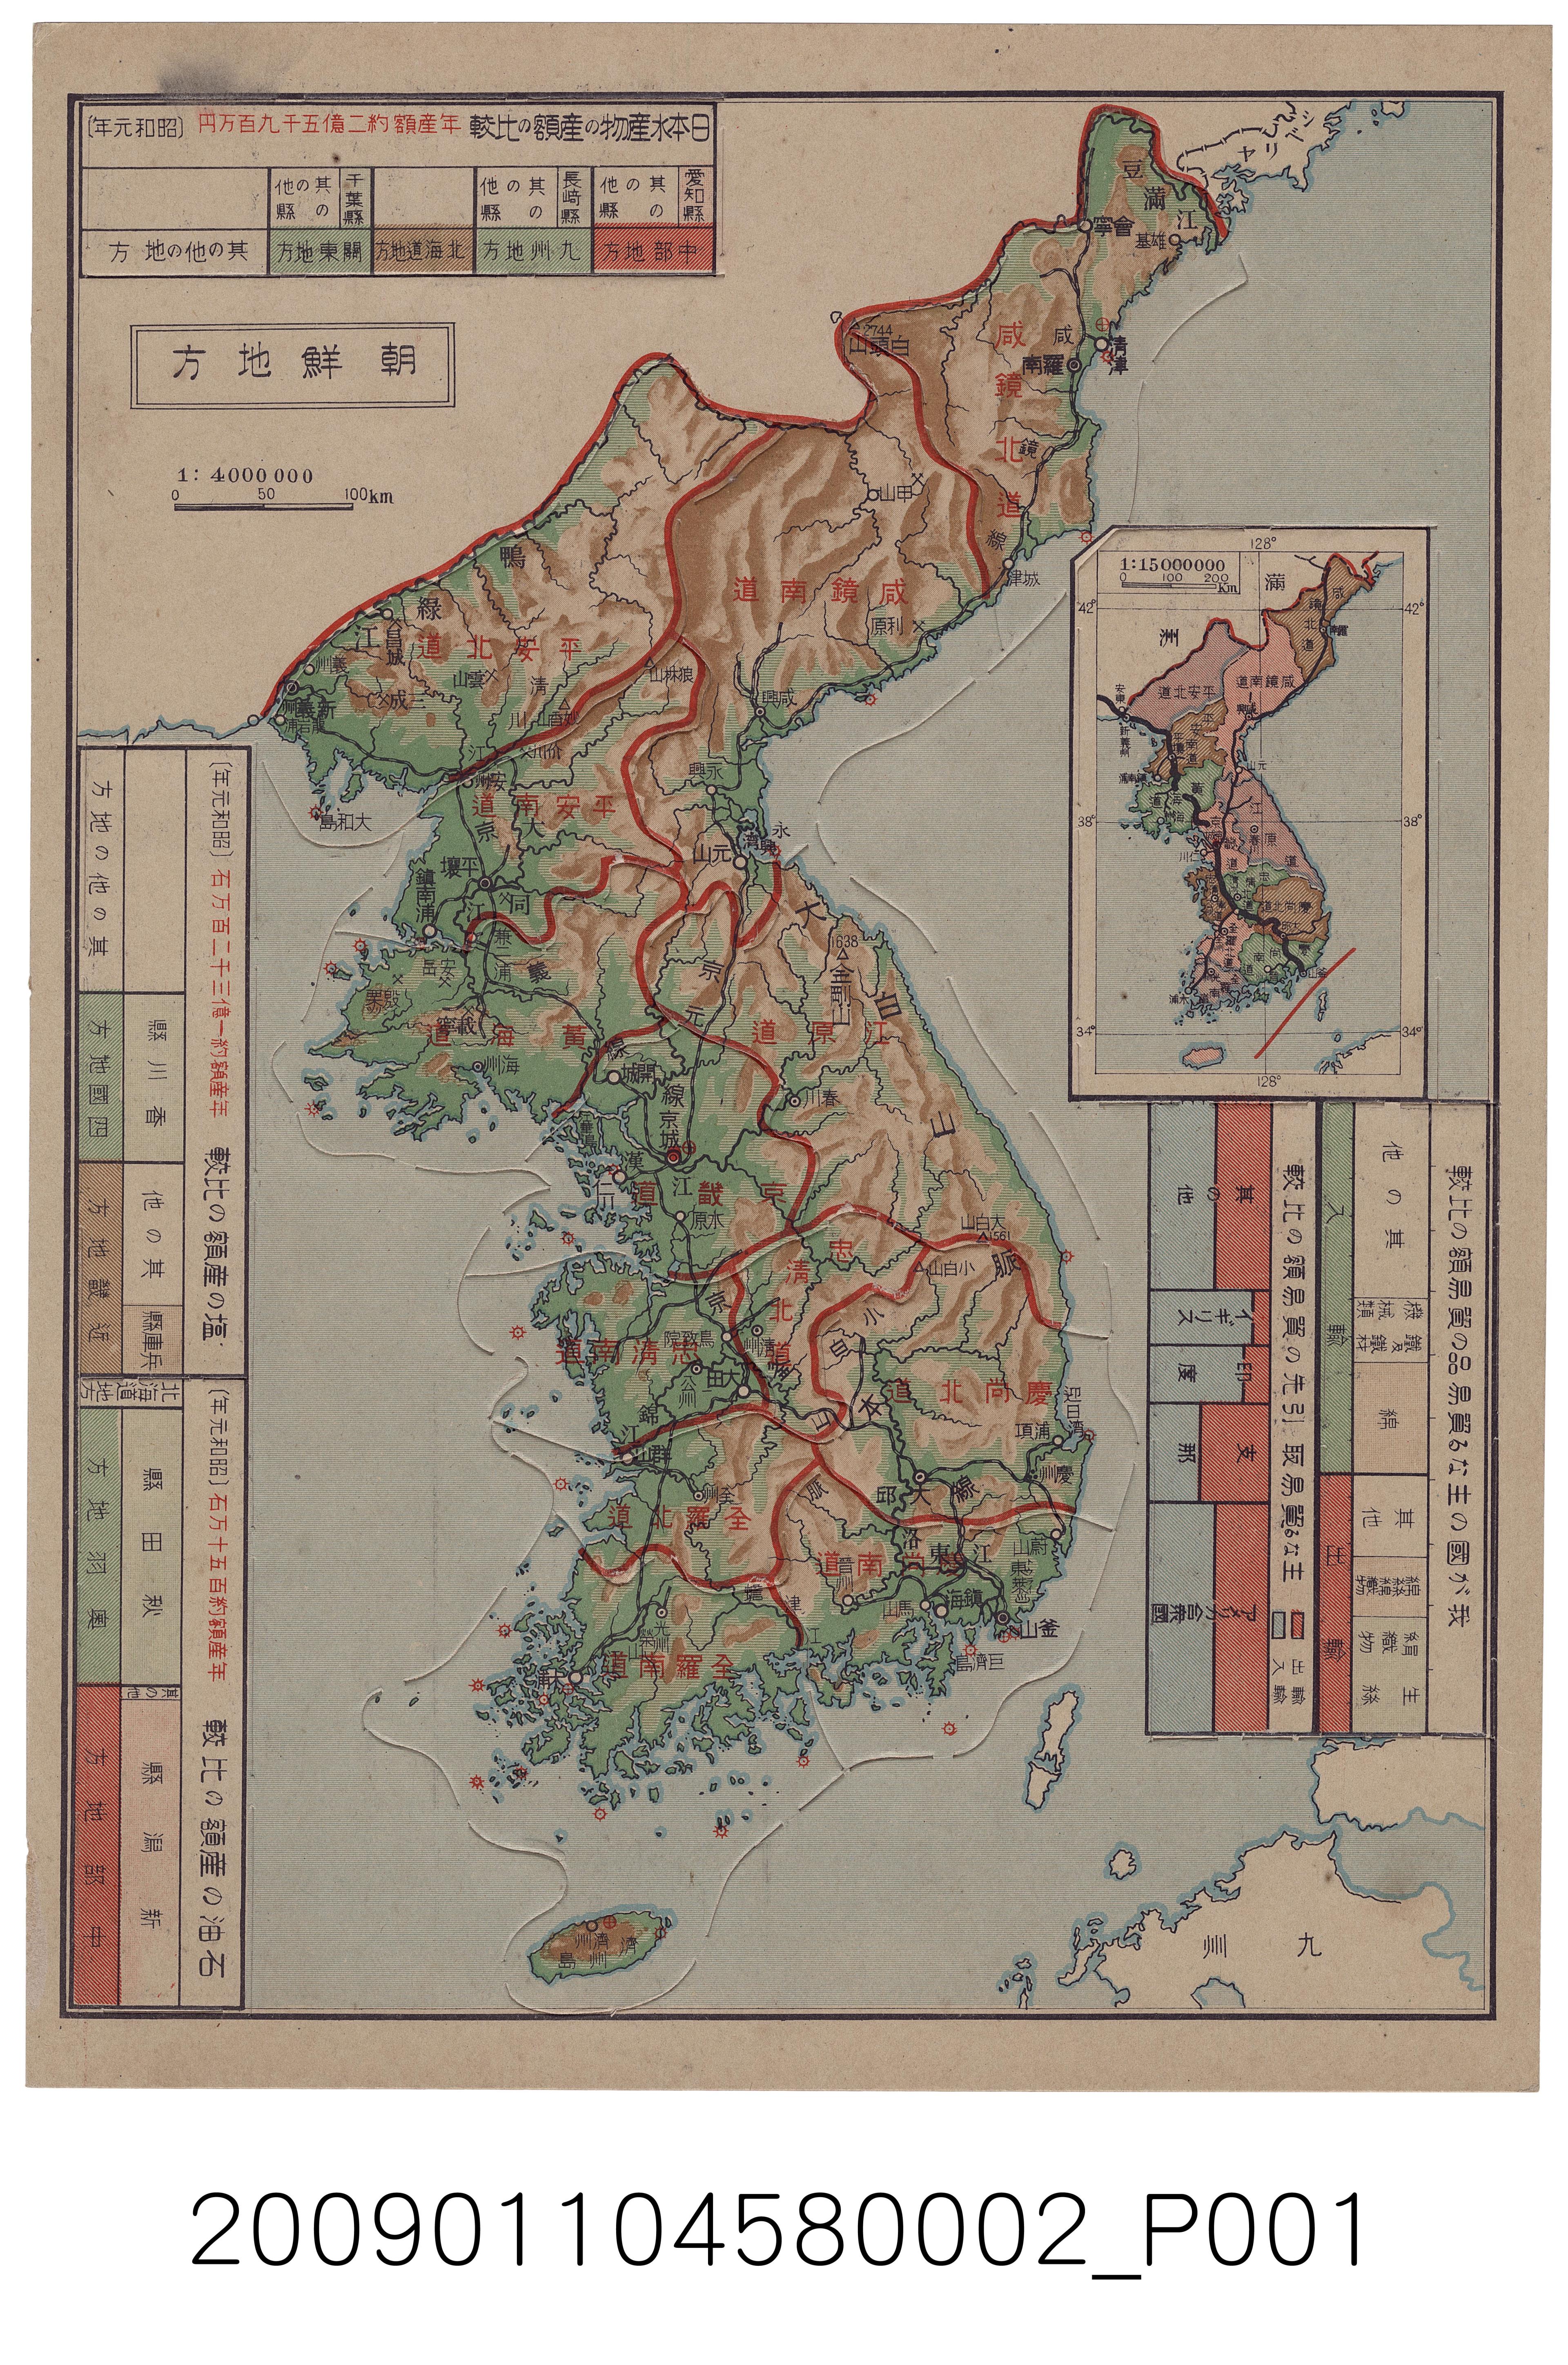 大日本雄辯會講談社發行《各府縣分解式大日本板地圖》第1幅〈朝鮮地方〉 (共2張)